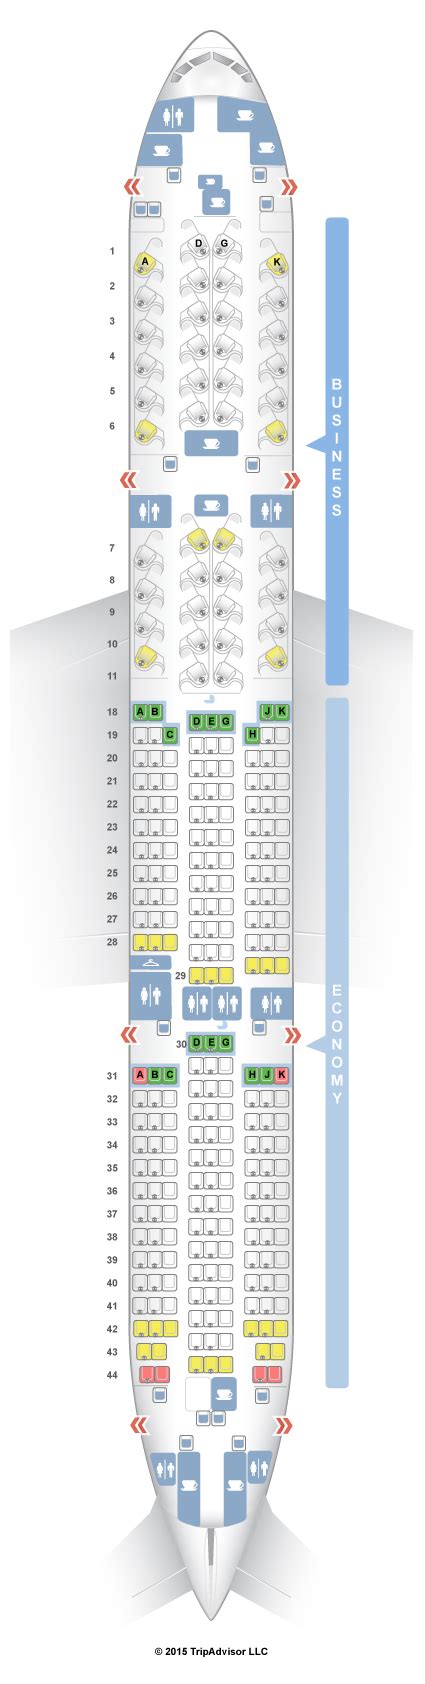 Seatguru Seat Map Air Canada Seatguru